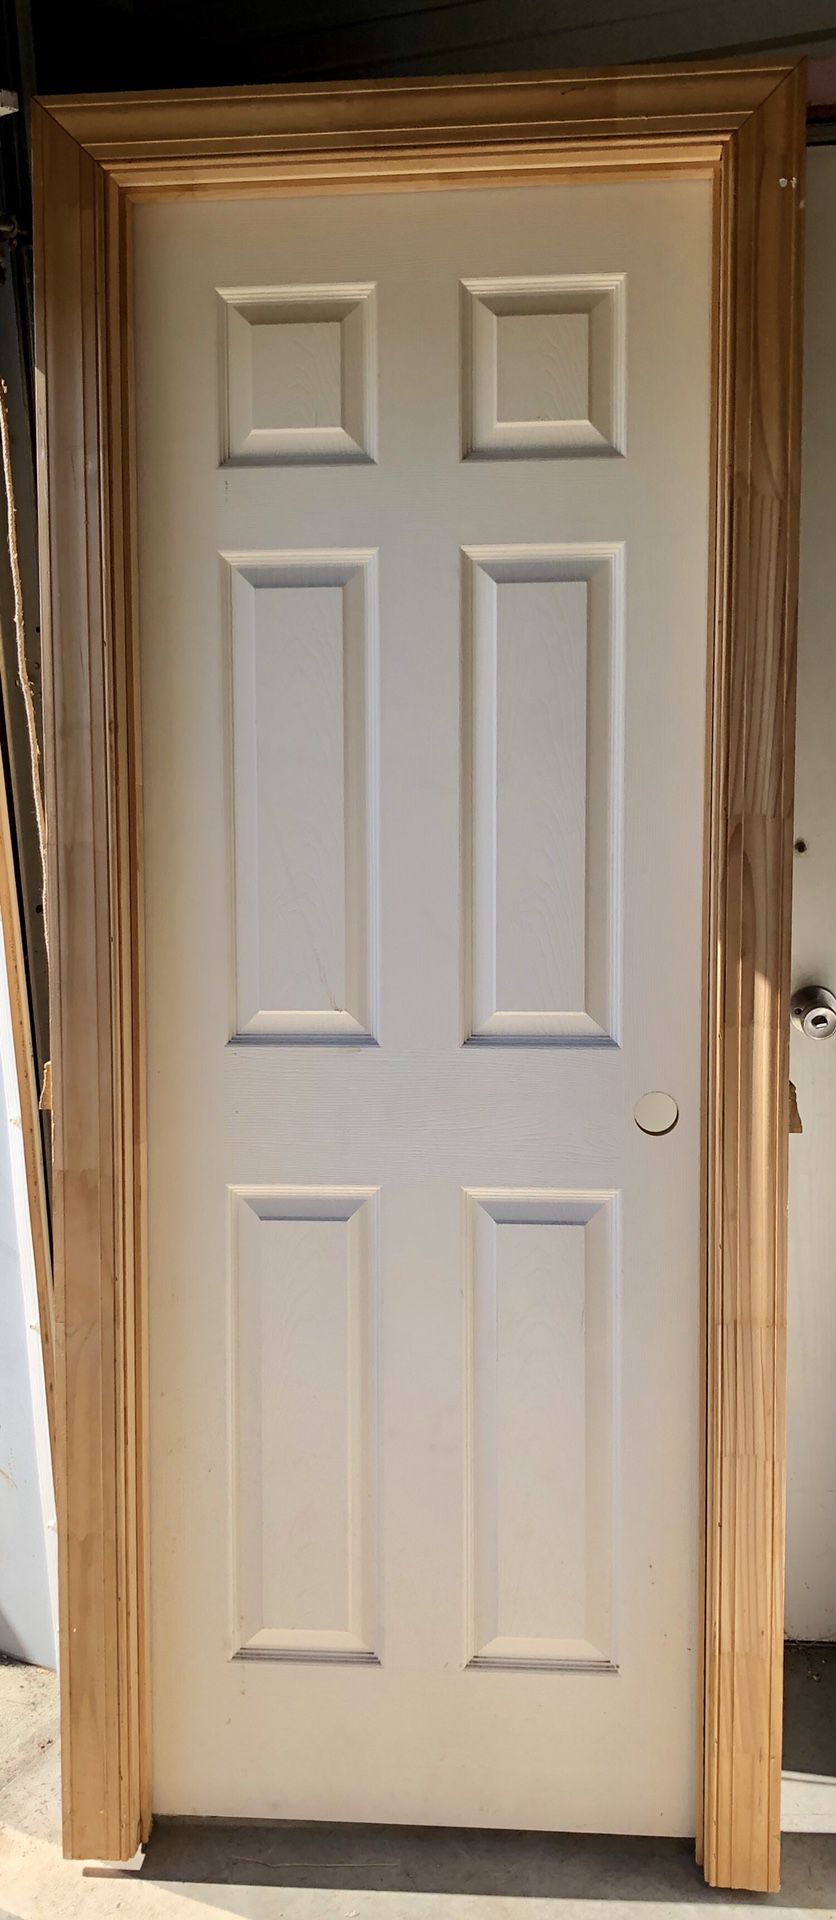 2’4” LH Six Panel Interior Door PreHung Brand New